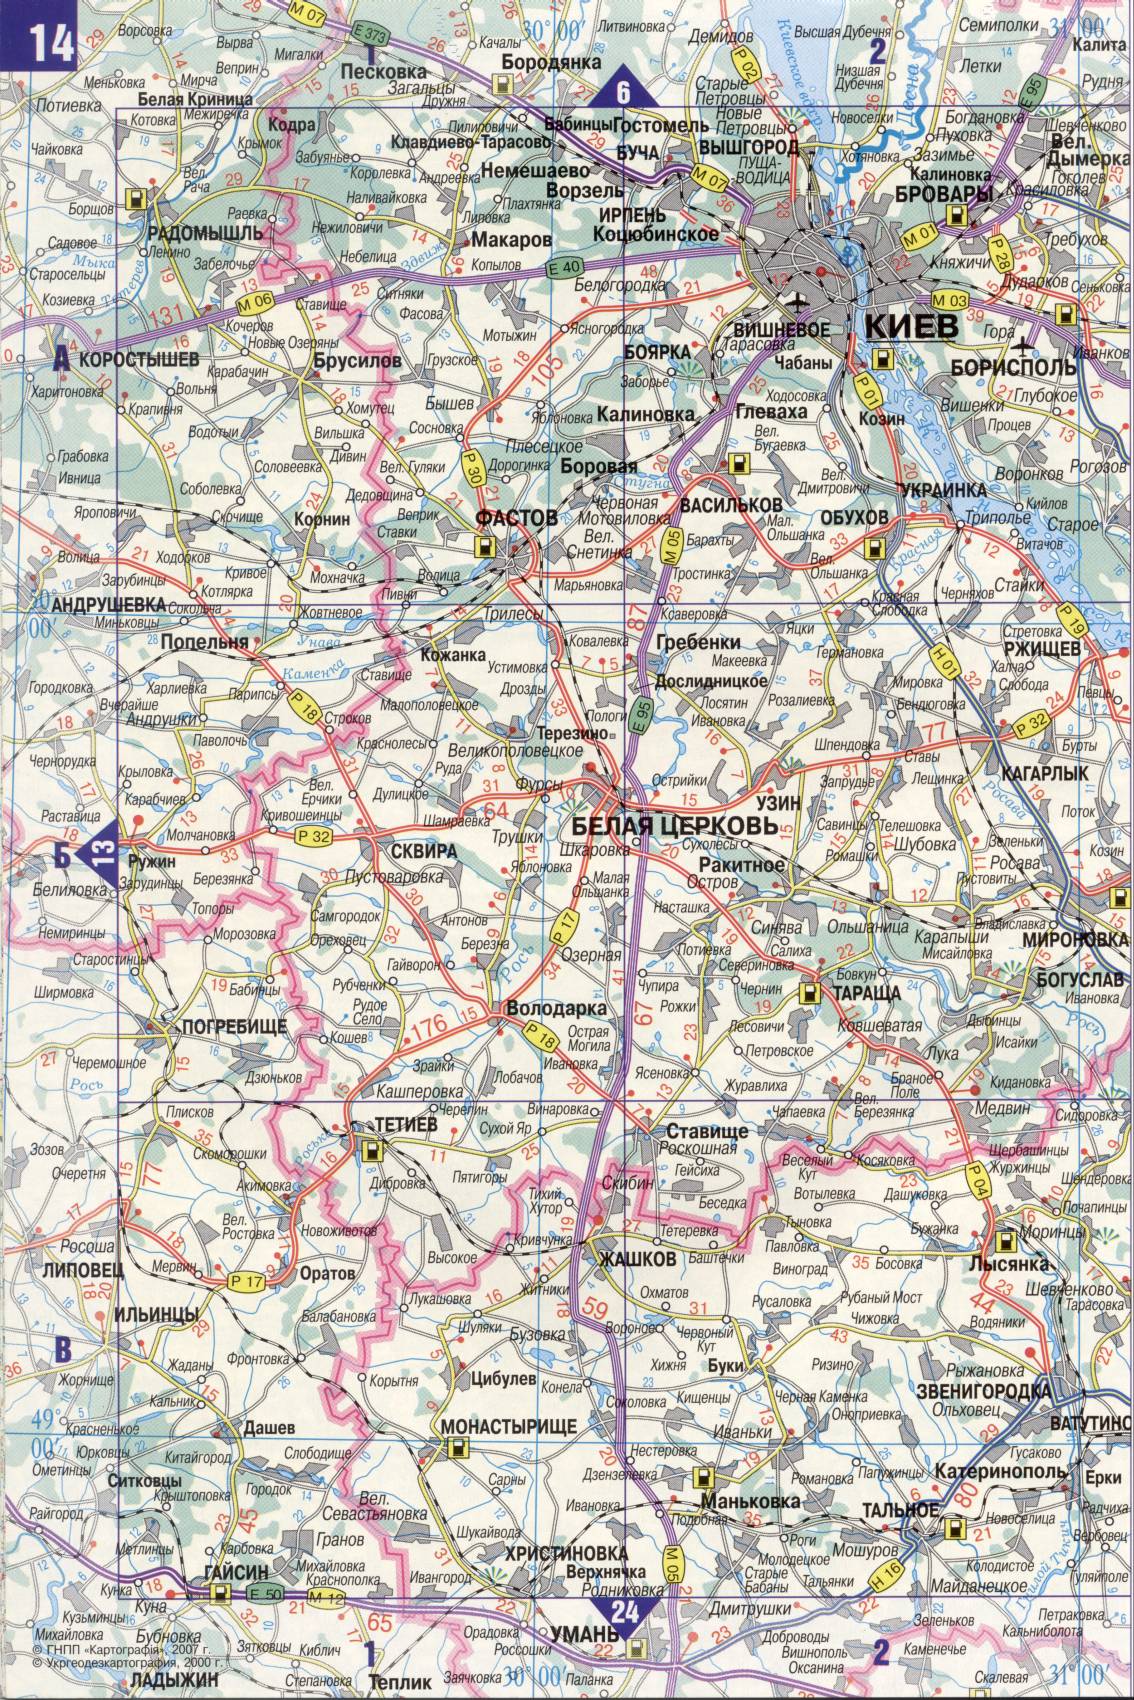 Karte der Ukraine. Detaillierte Straßenkarte der Ukraine avtomobilnog Satin. kostenlos herunterladen, E1